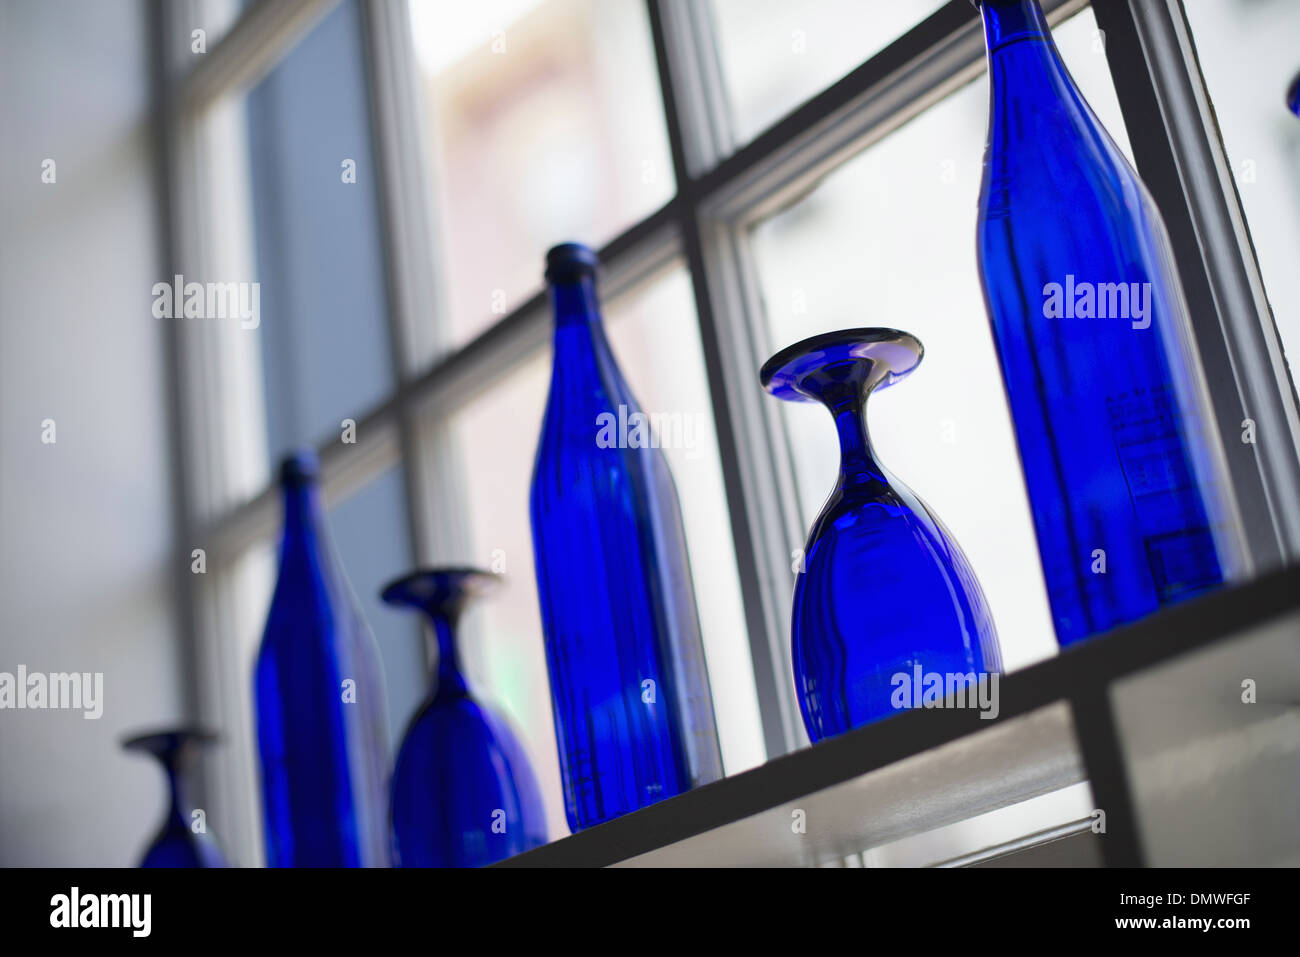 Ein Café-Interieur. Helle blaue Gläser auf freie Tische. Stockfoto